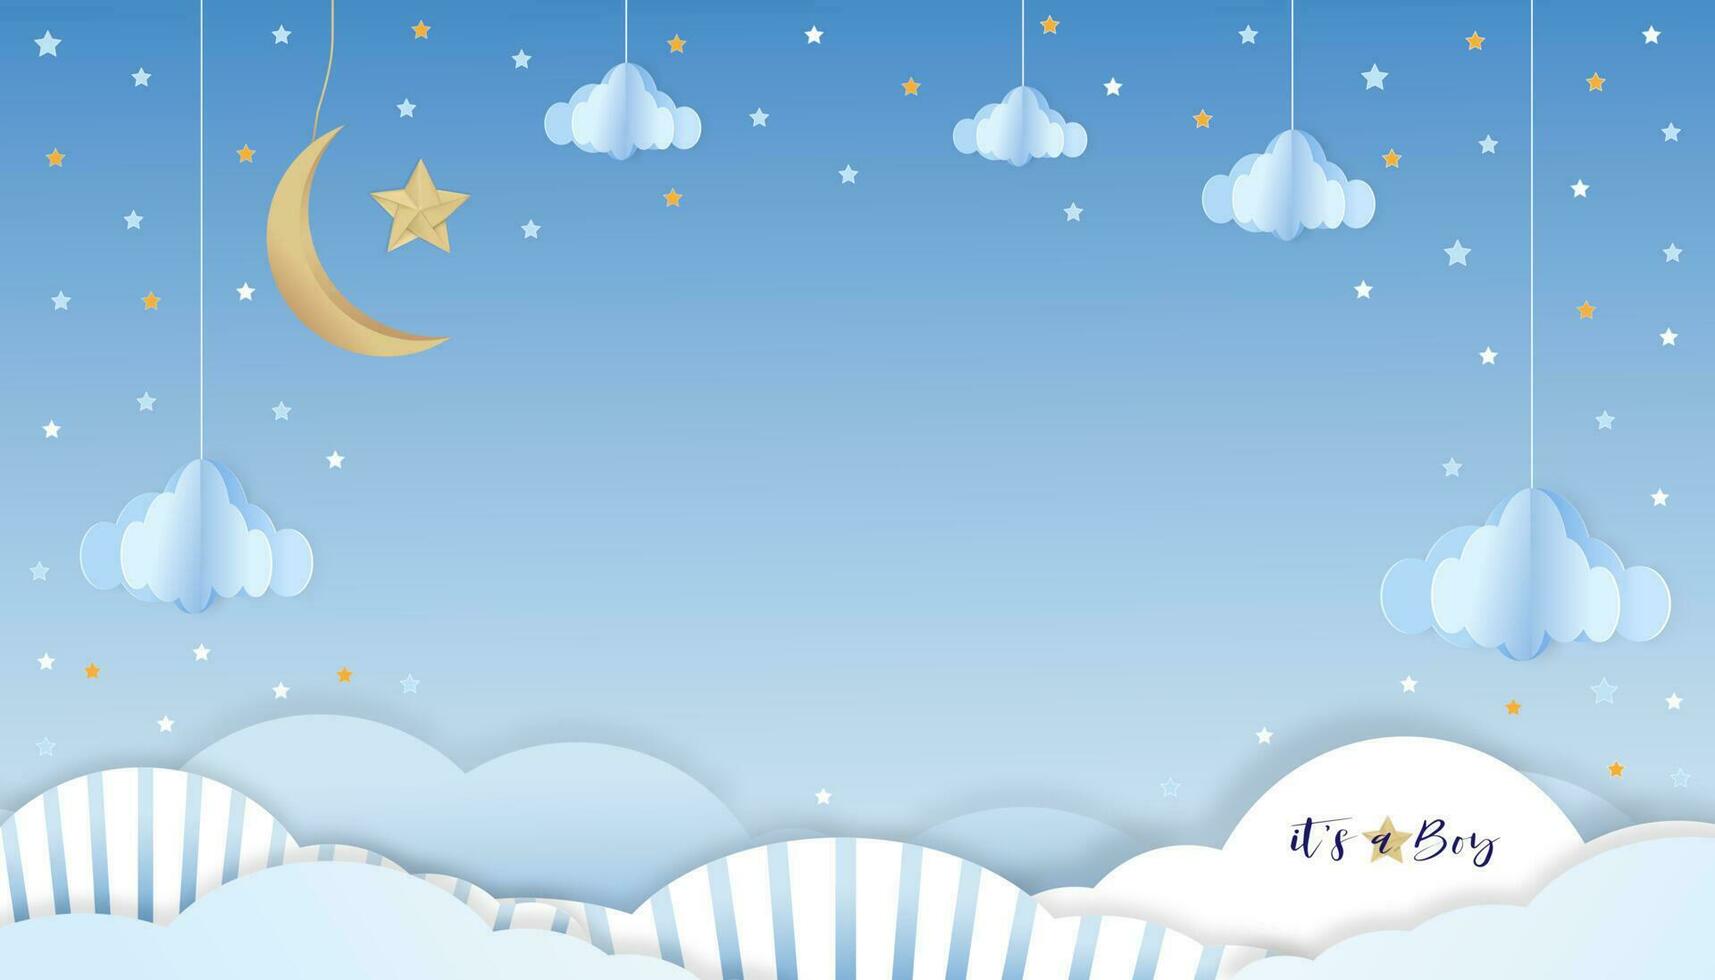 bébé garçon douche carte bleu fond, papier Couper abstrait origami paysage nuageux, croissant lune et étoiles sur bleu ciel, vecteur illustration mignonne papier art avec copie espace pour de bébé Photos